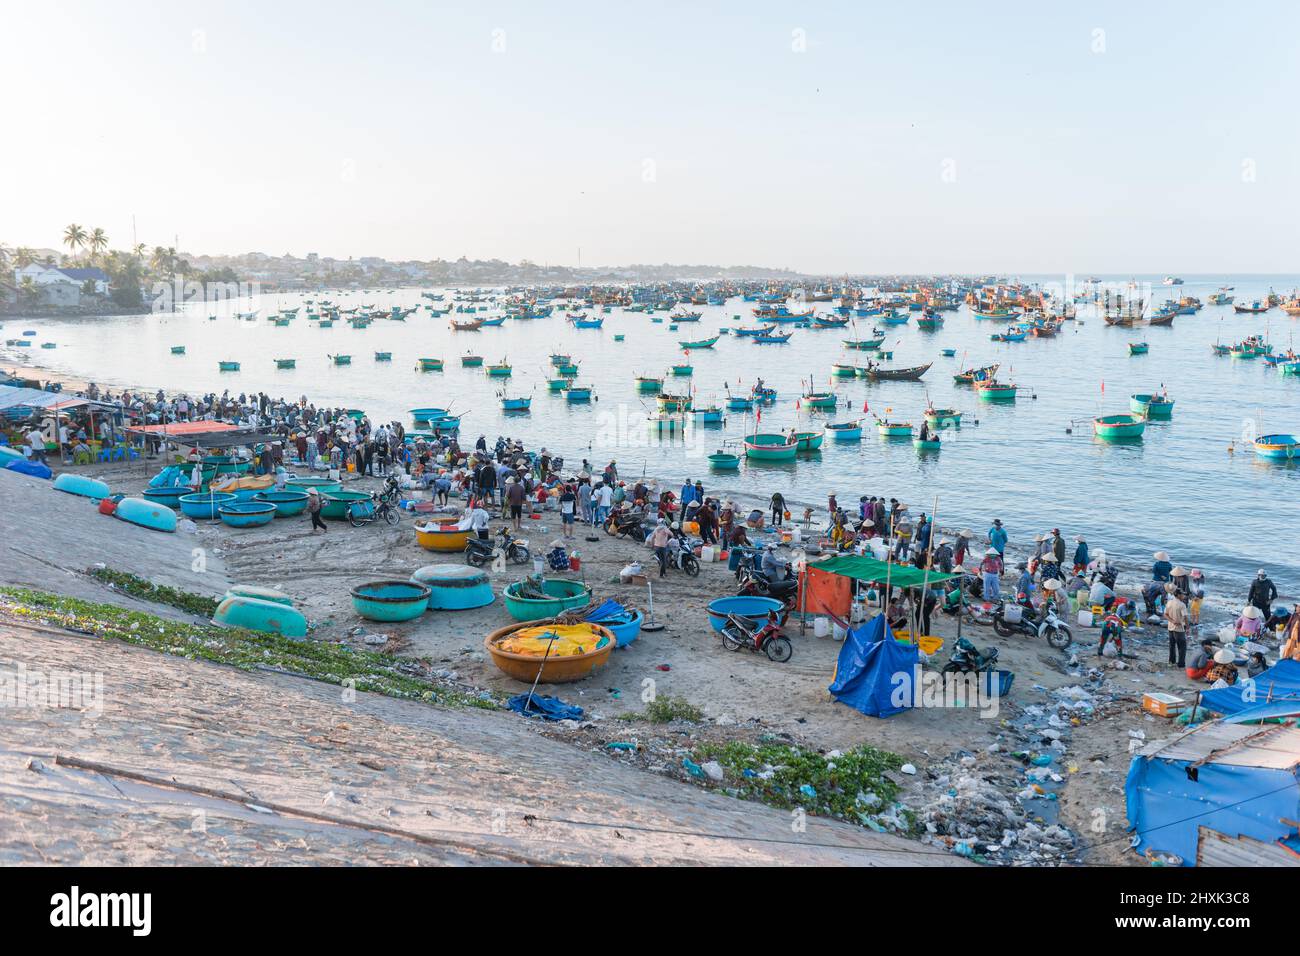 Colorati tondi vietnamiti barche da pesca in mare. La gente del posto vende frutti di mare sulla spiaggia. Vista mare. Mercato di pesce sulla spiaggia in Asia. Alta qualità Foto Stock